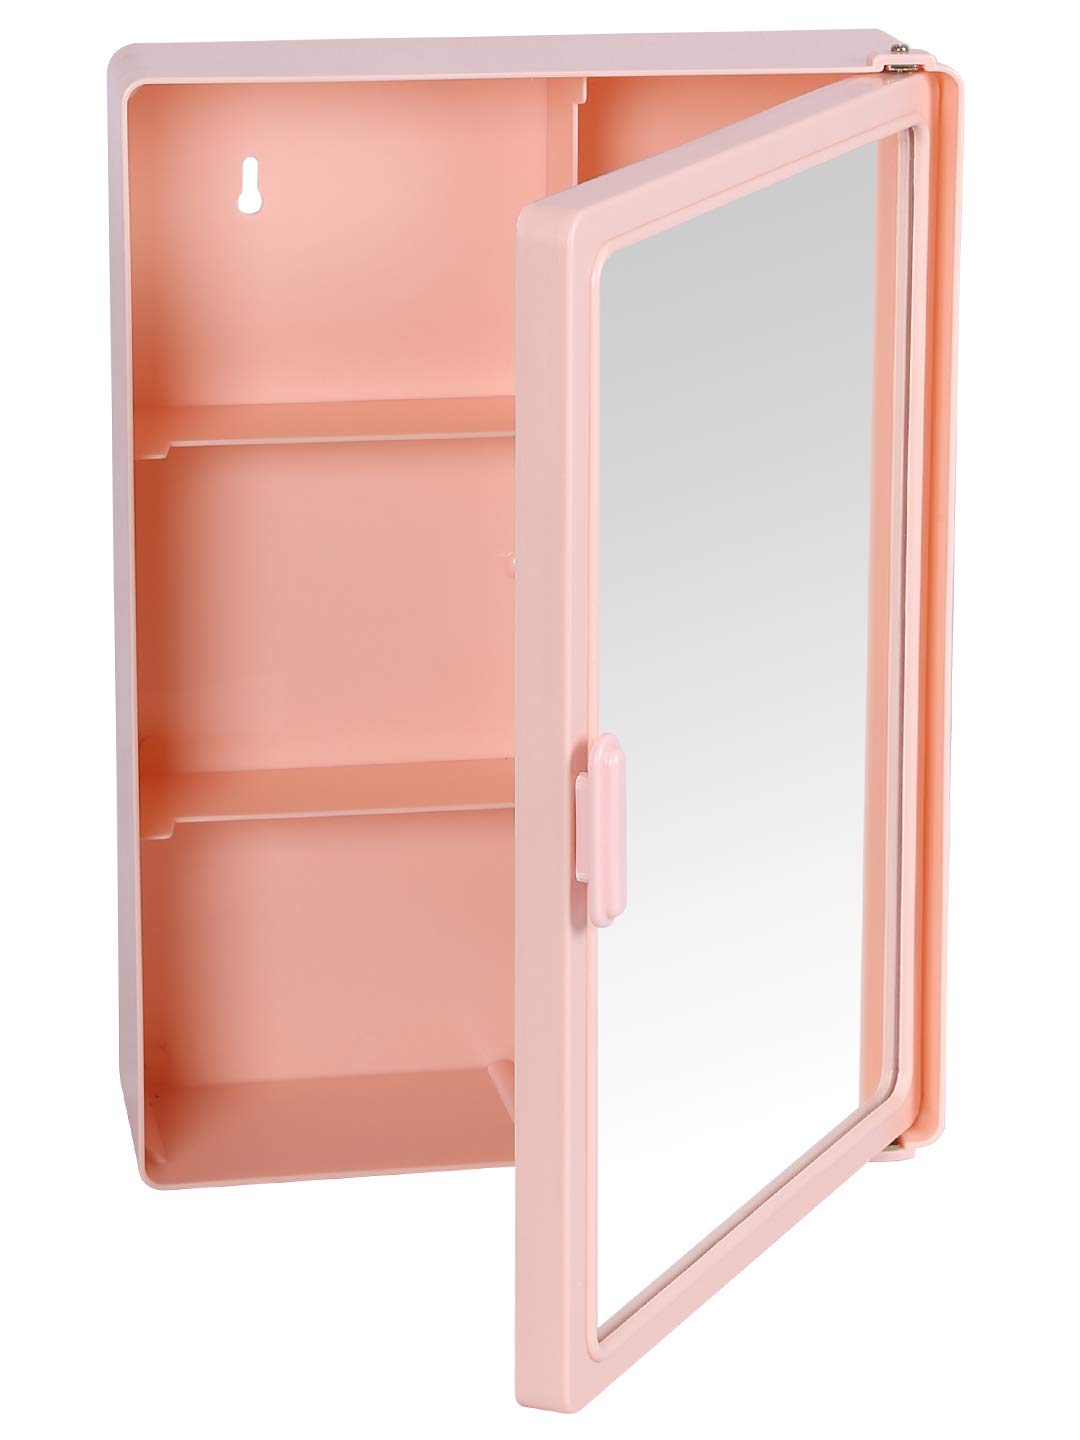 Zahab Single Door Bathroom Cabinet with Mirror